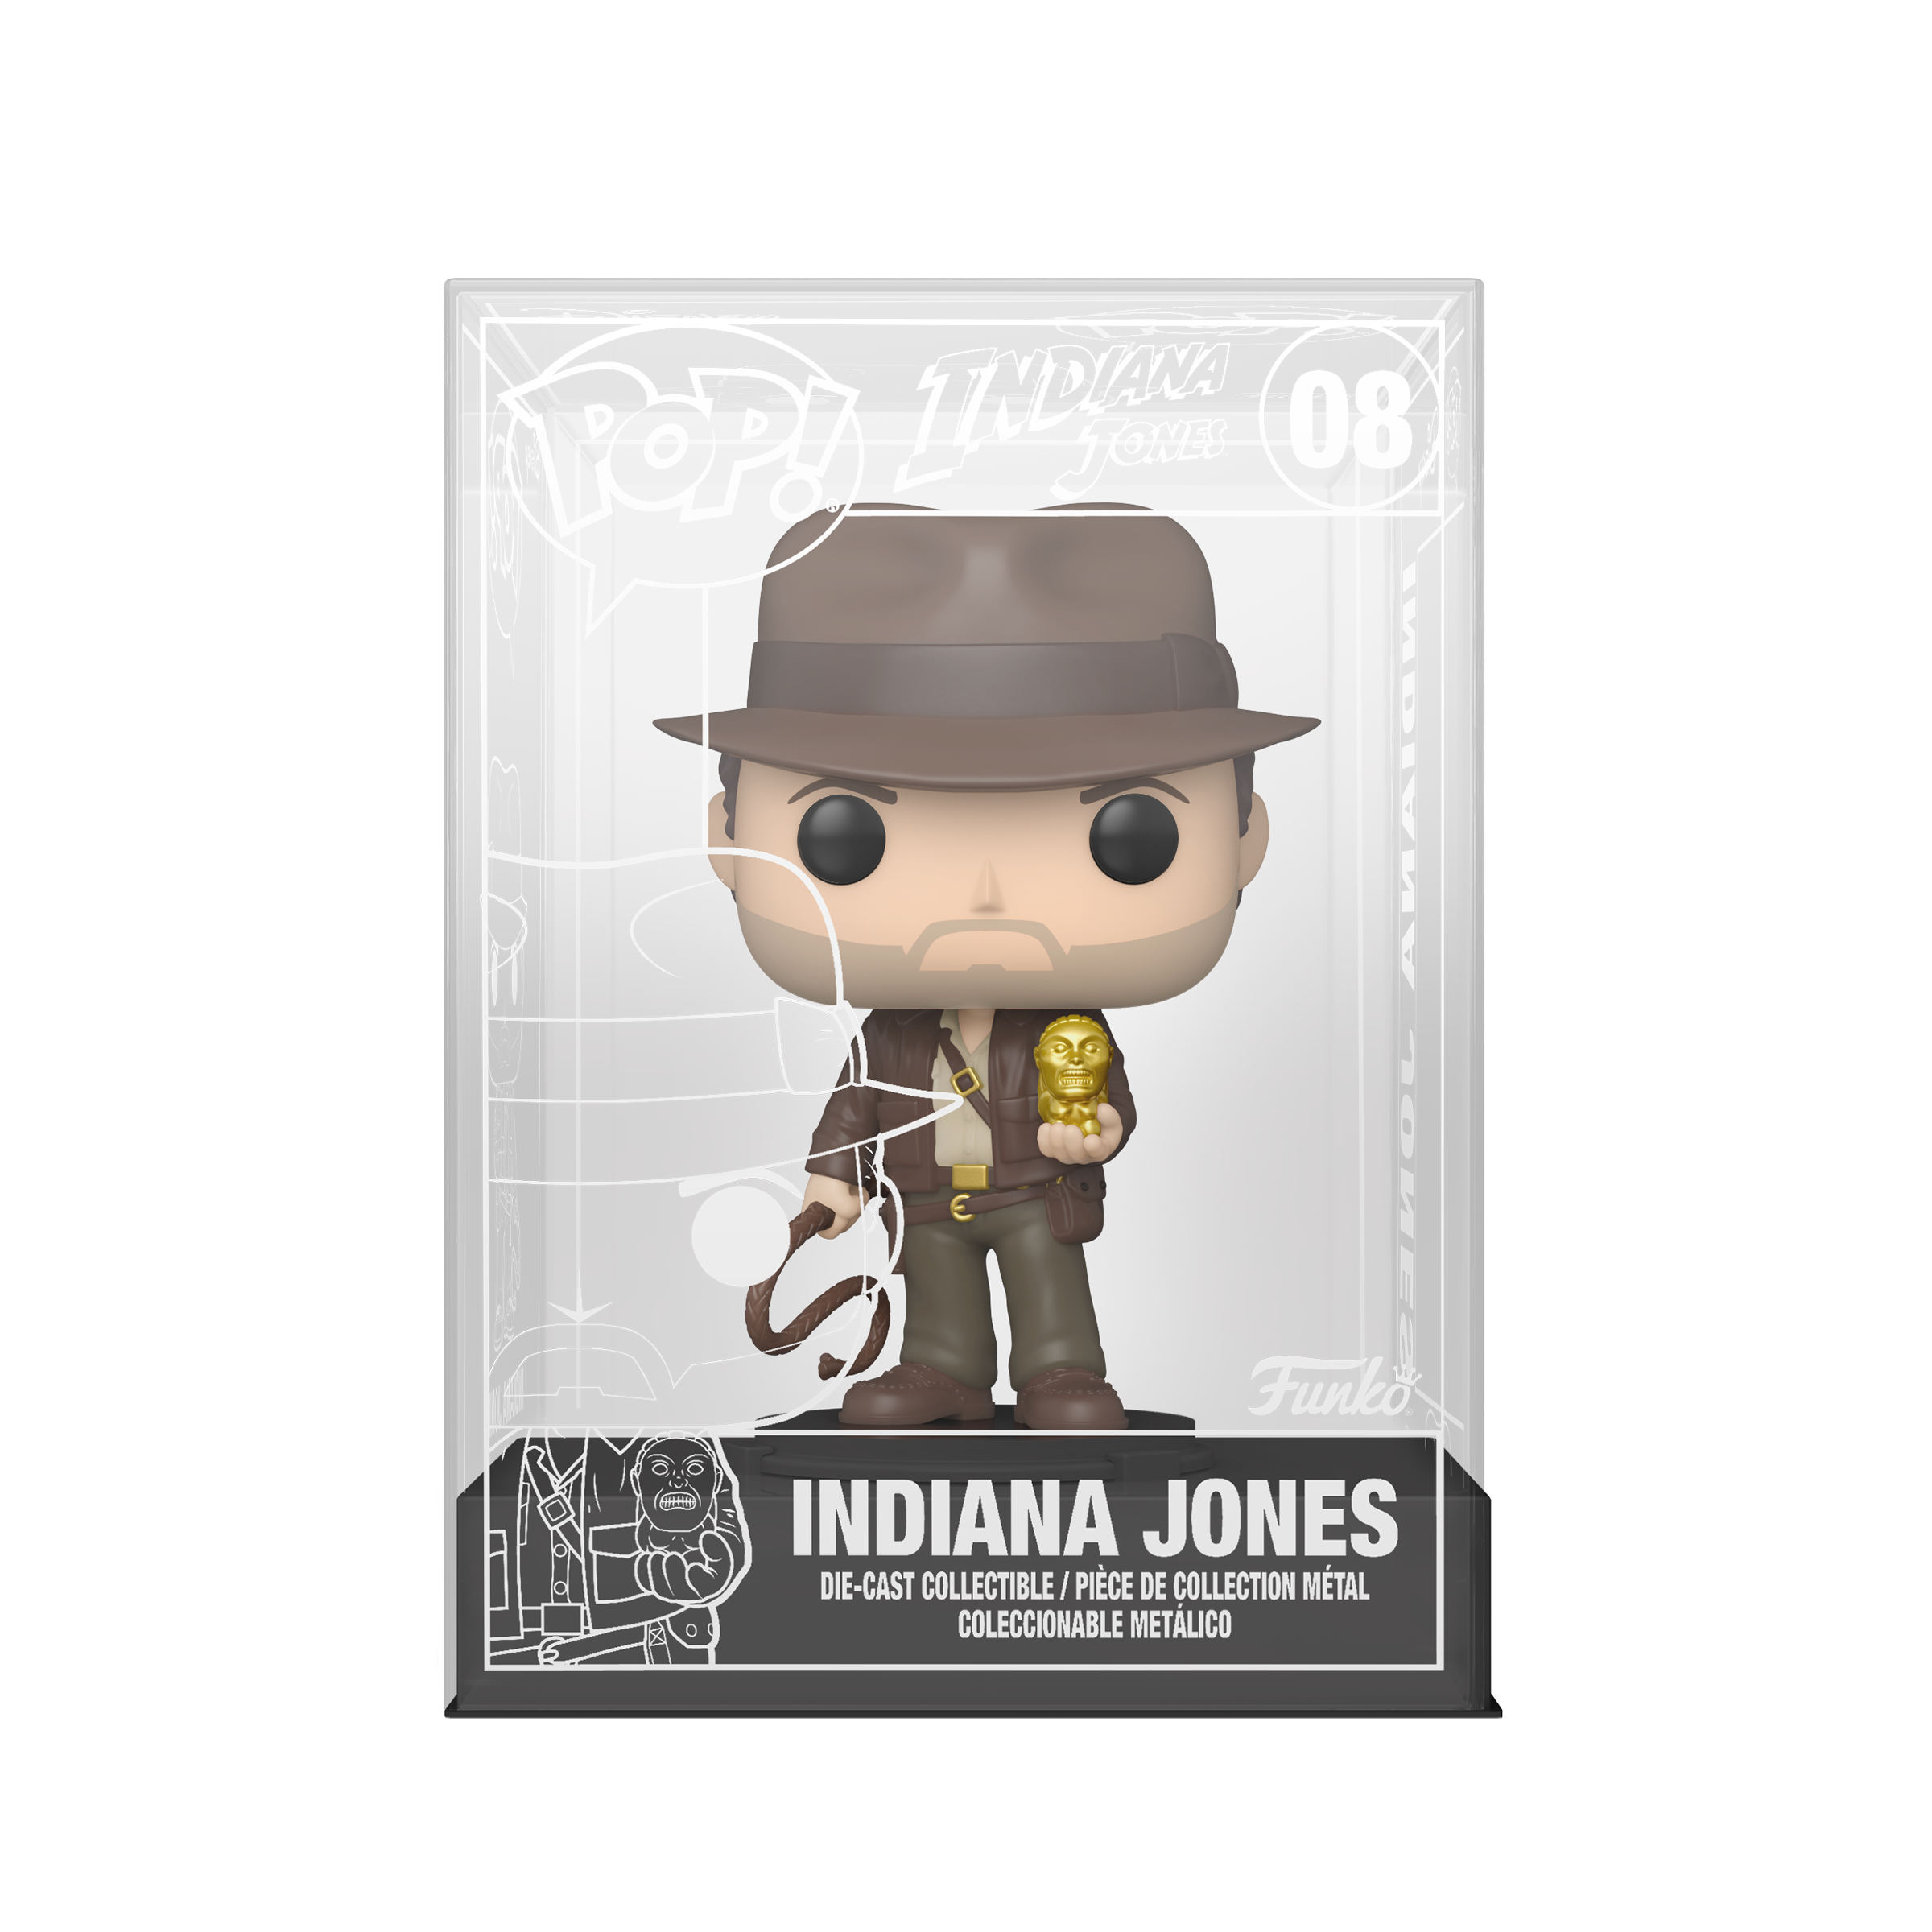 Die-Cast Collectible of Indiana Jones